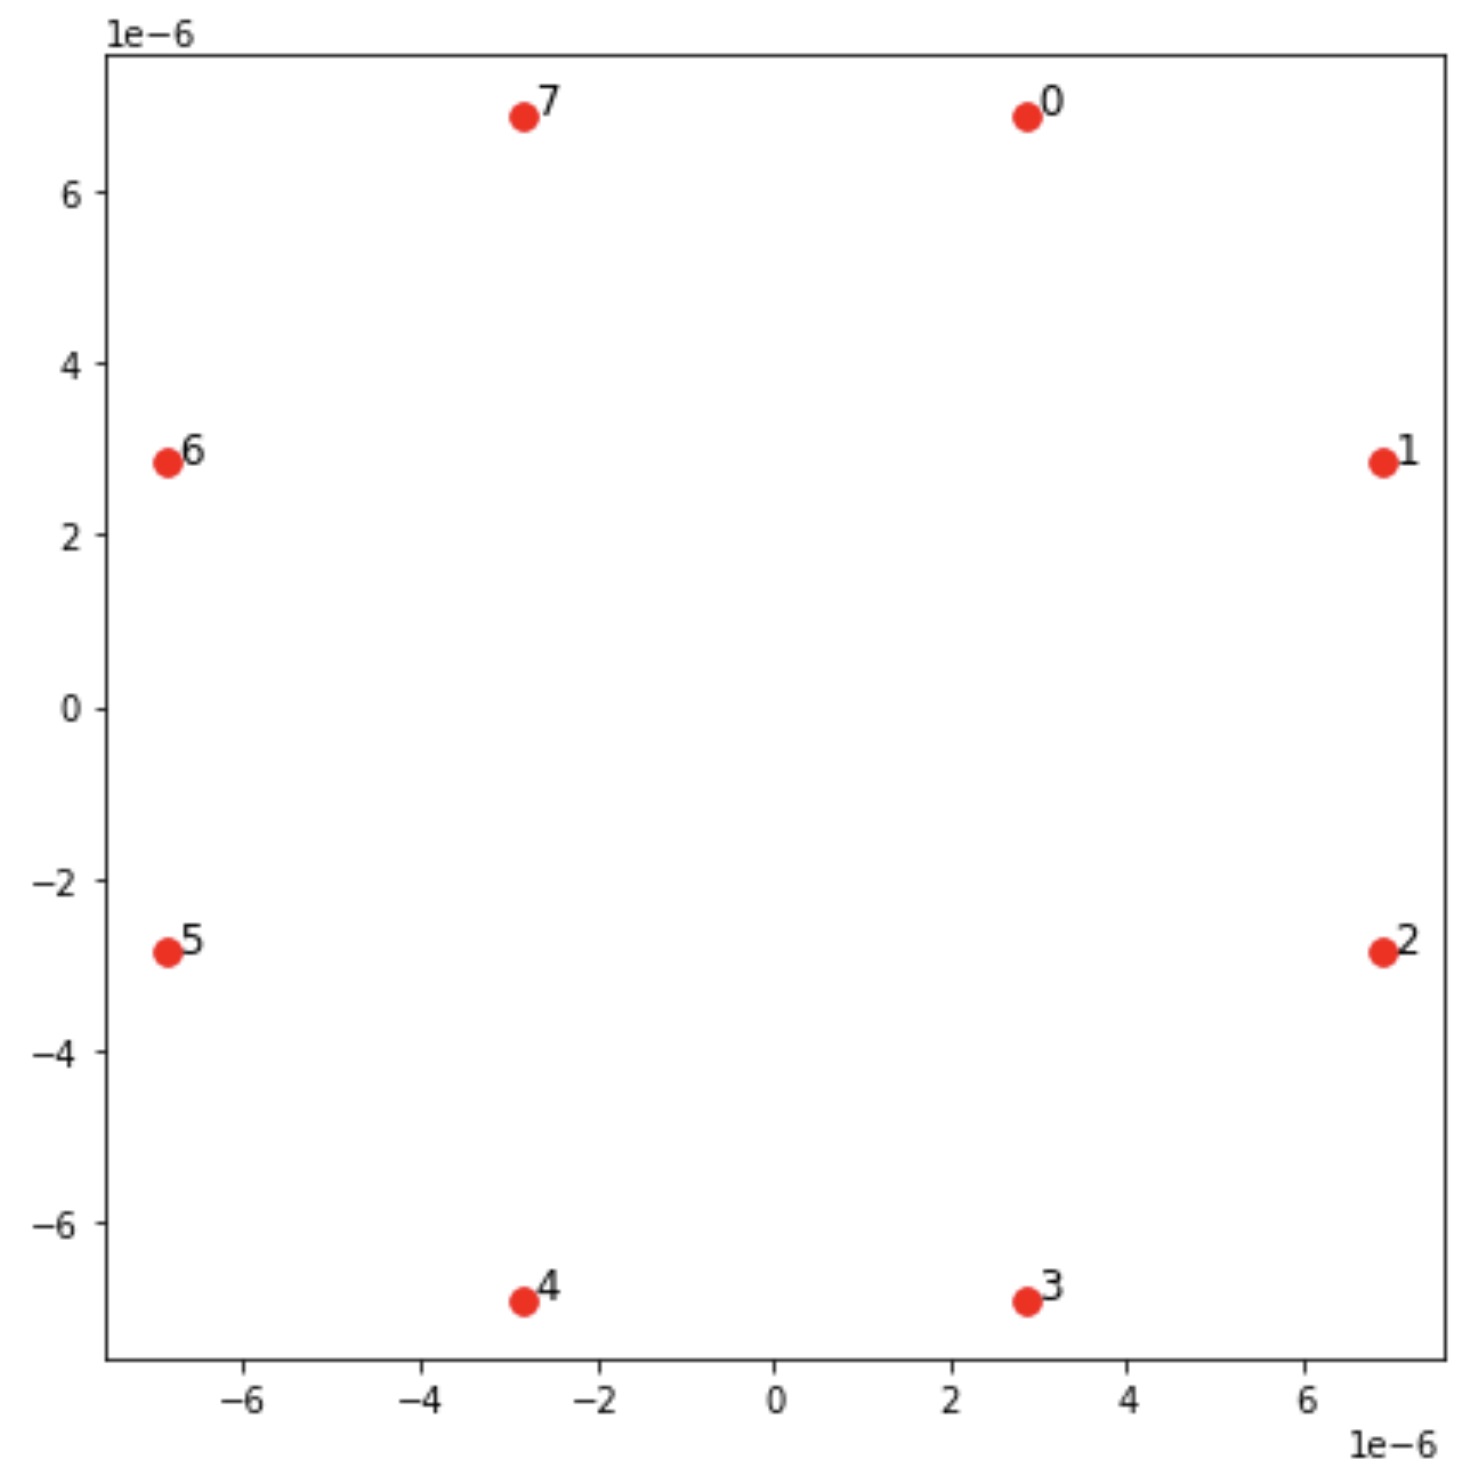 散點圖顯示分佈在兩個軸上的正值和負值上的點。